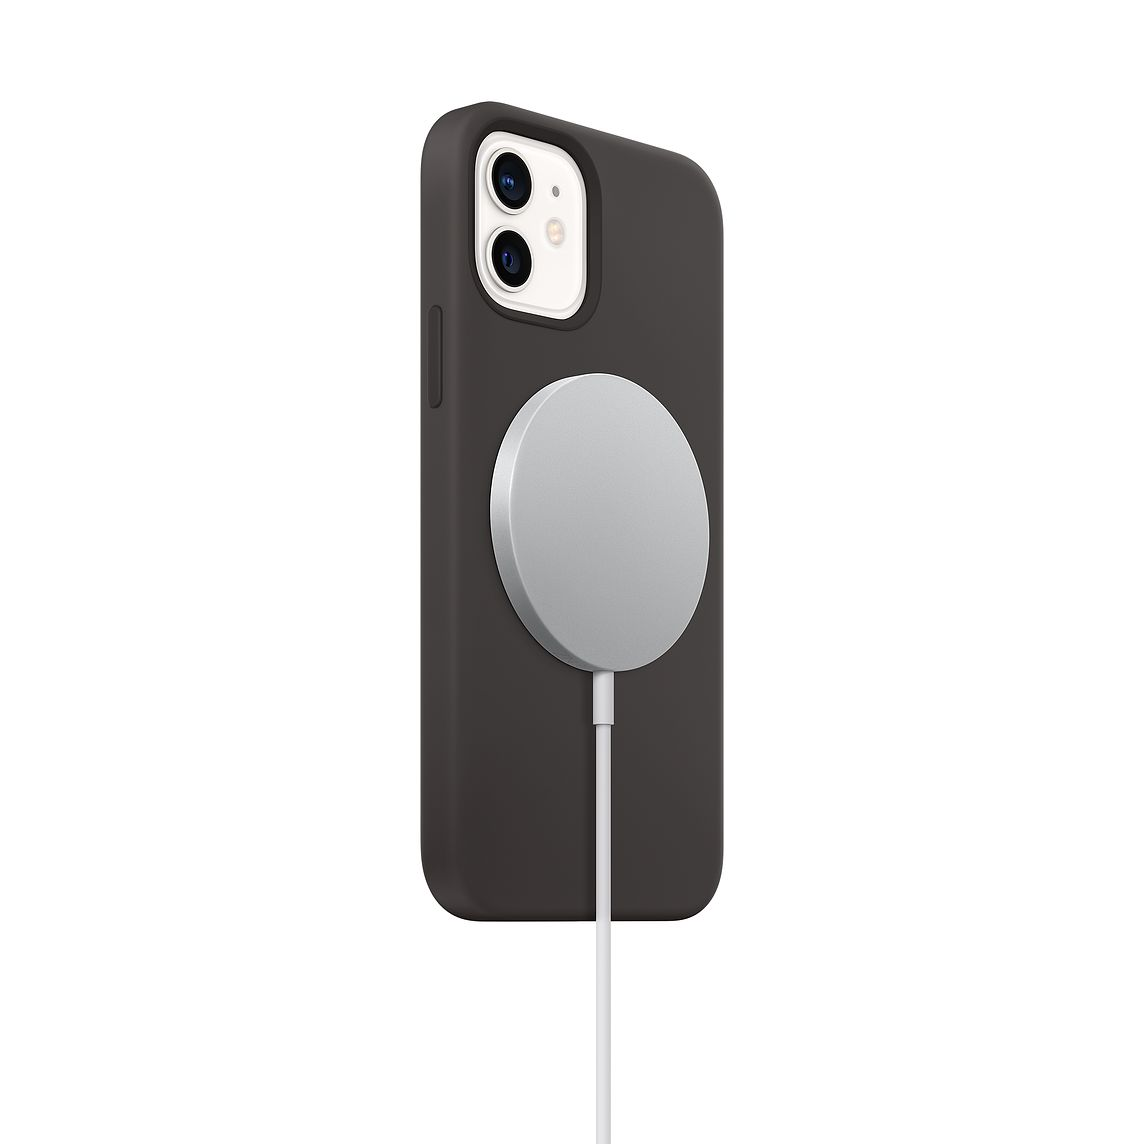 iPhone 12 新的 MagSafe 充电速度可能会令你感到失望